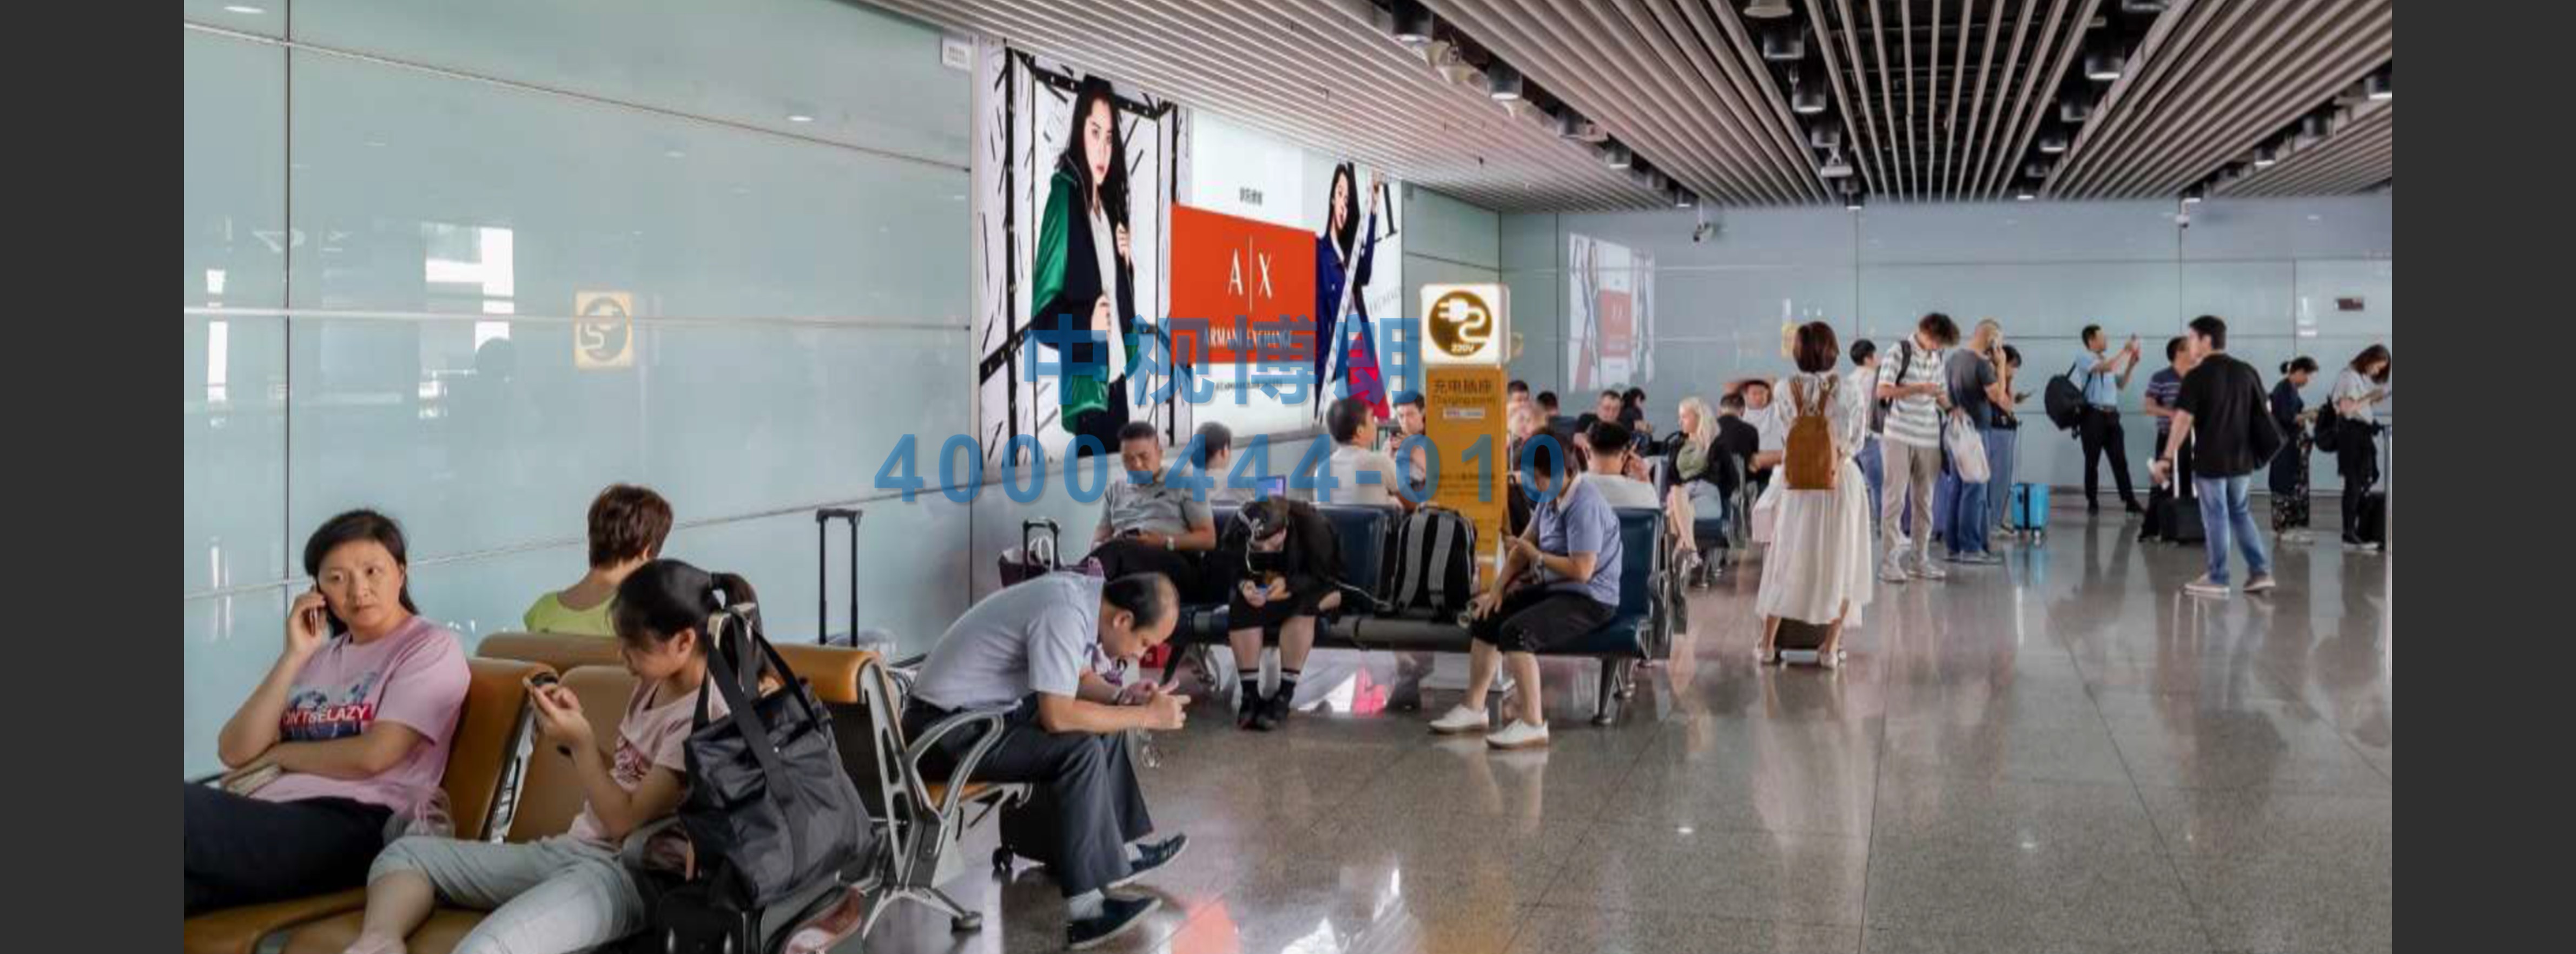 北京首都机场广告-T3C出发跨区域6块墙体灯箱